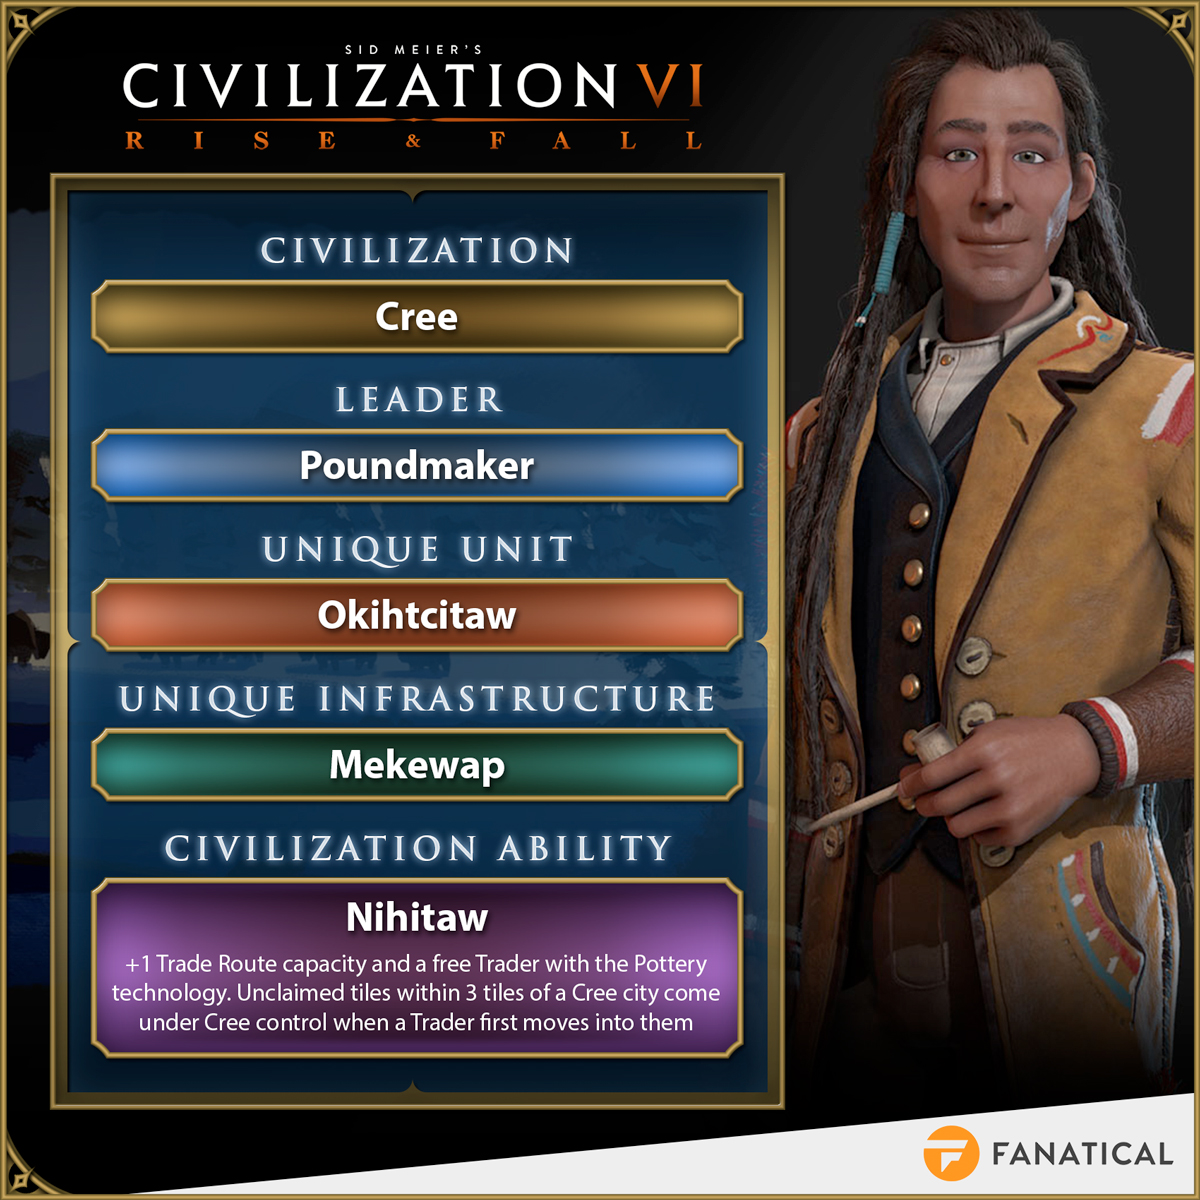 civilizations in civ 6